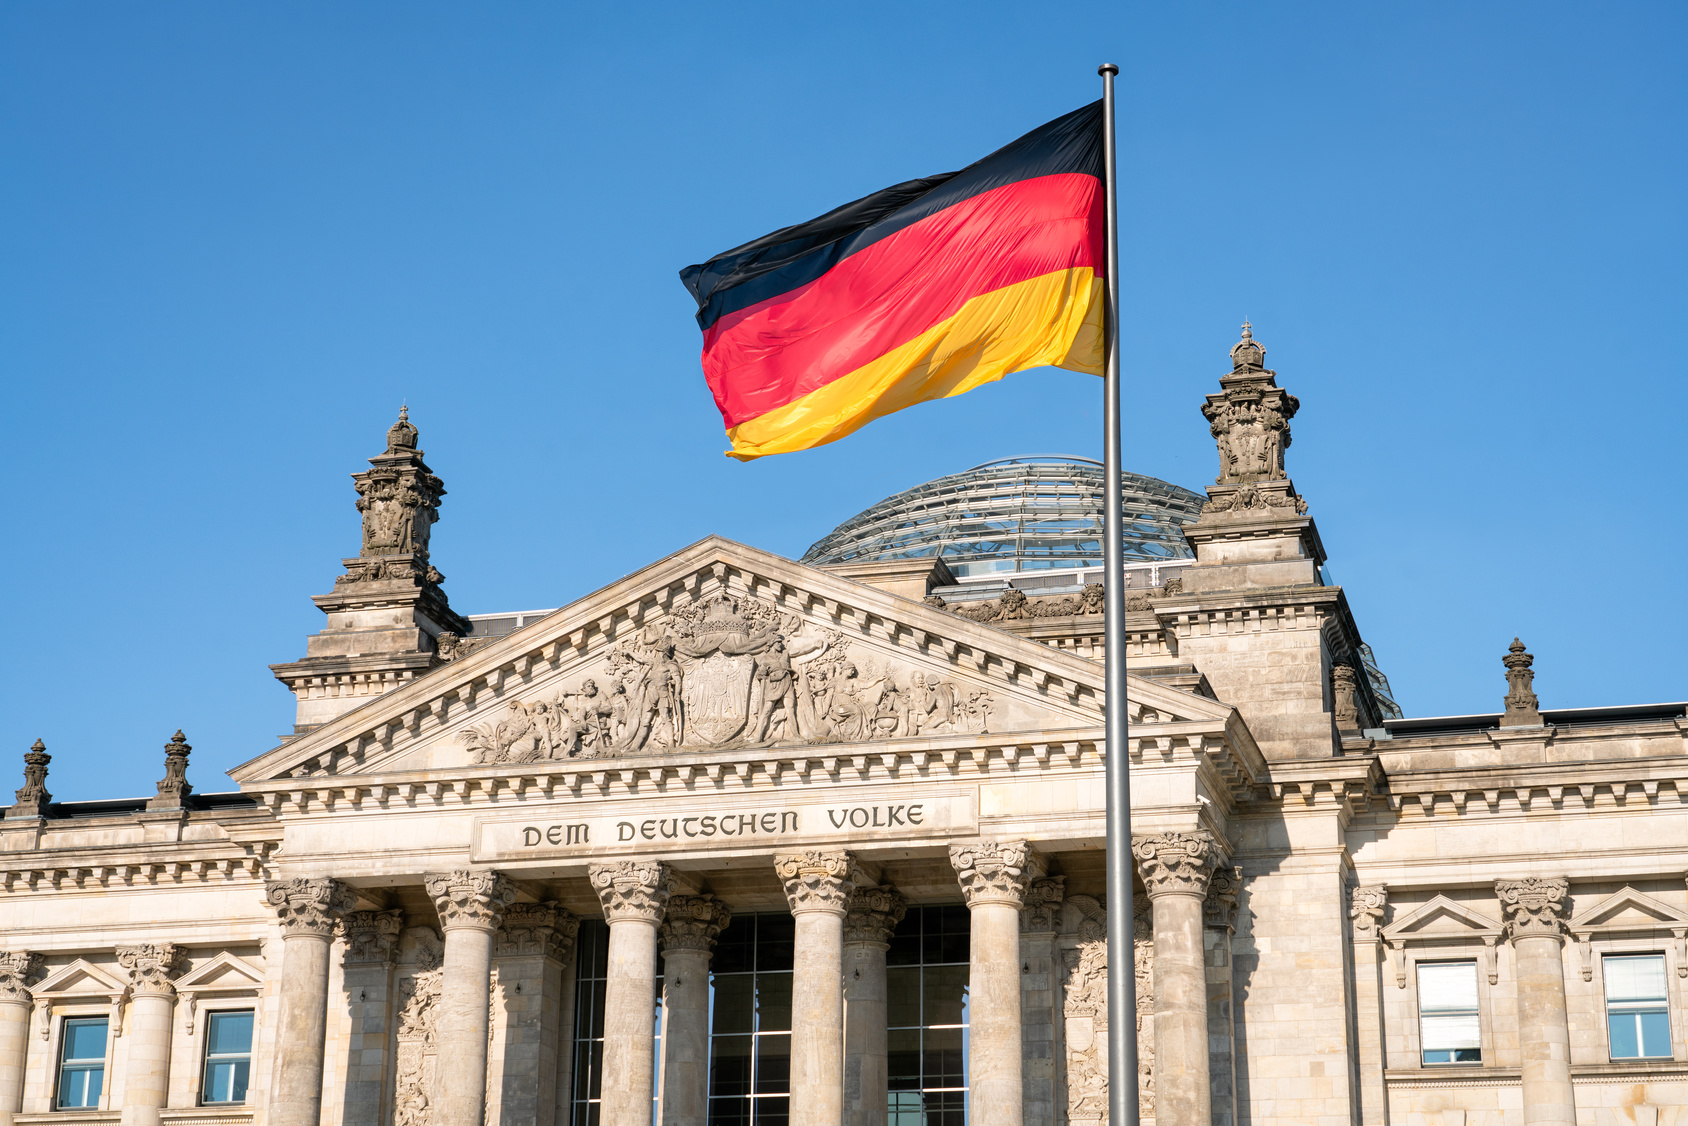 Bildausschnitt Reichstagsgebäude in Berlin mit deutscher Fahne